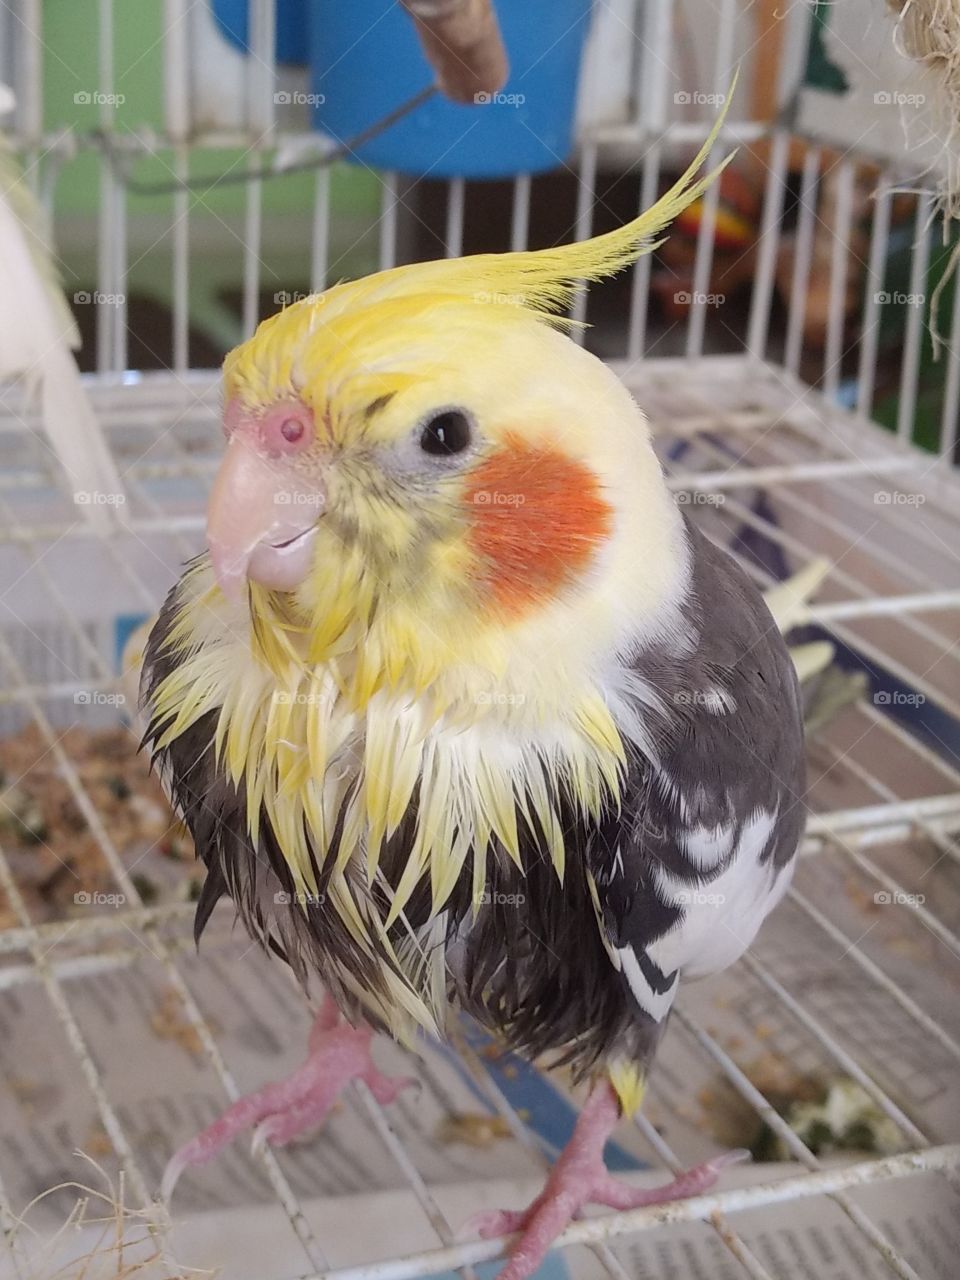 bird shower time